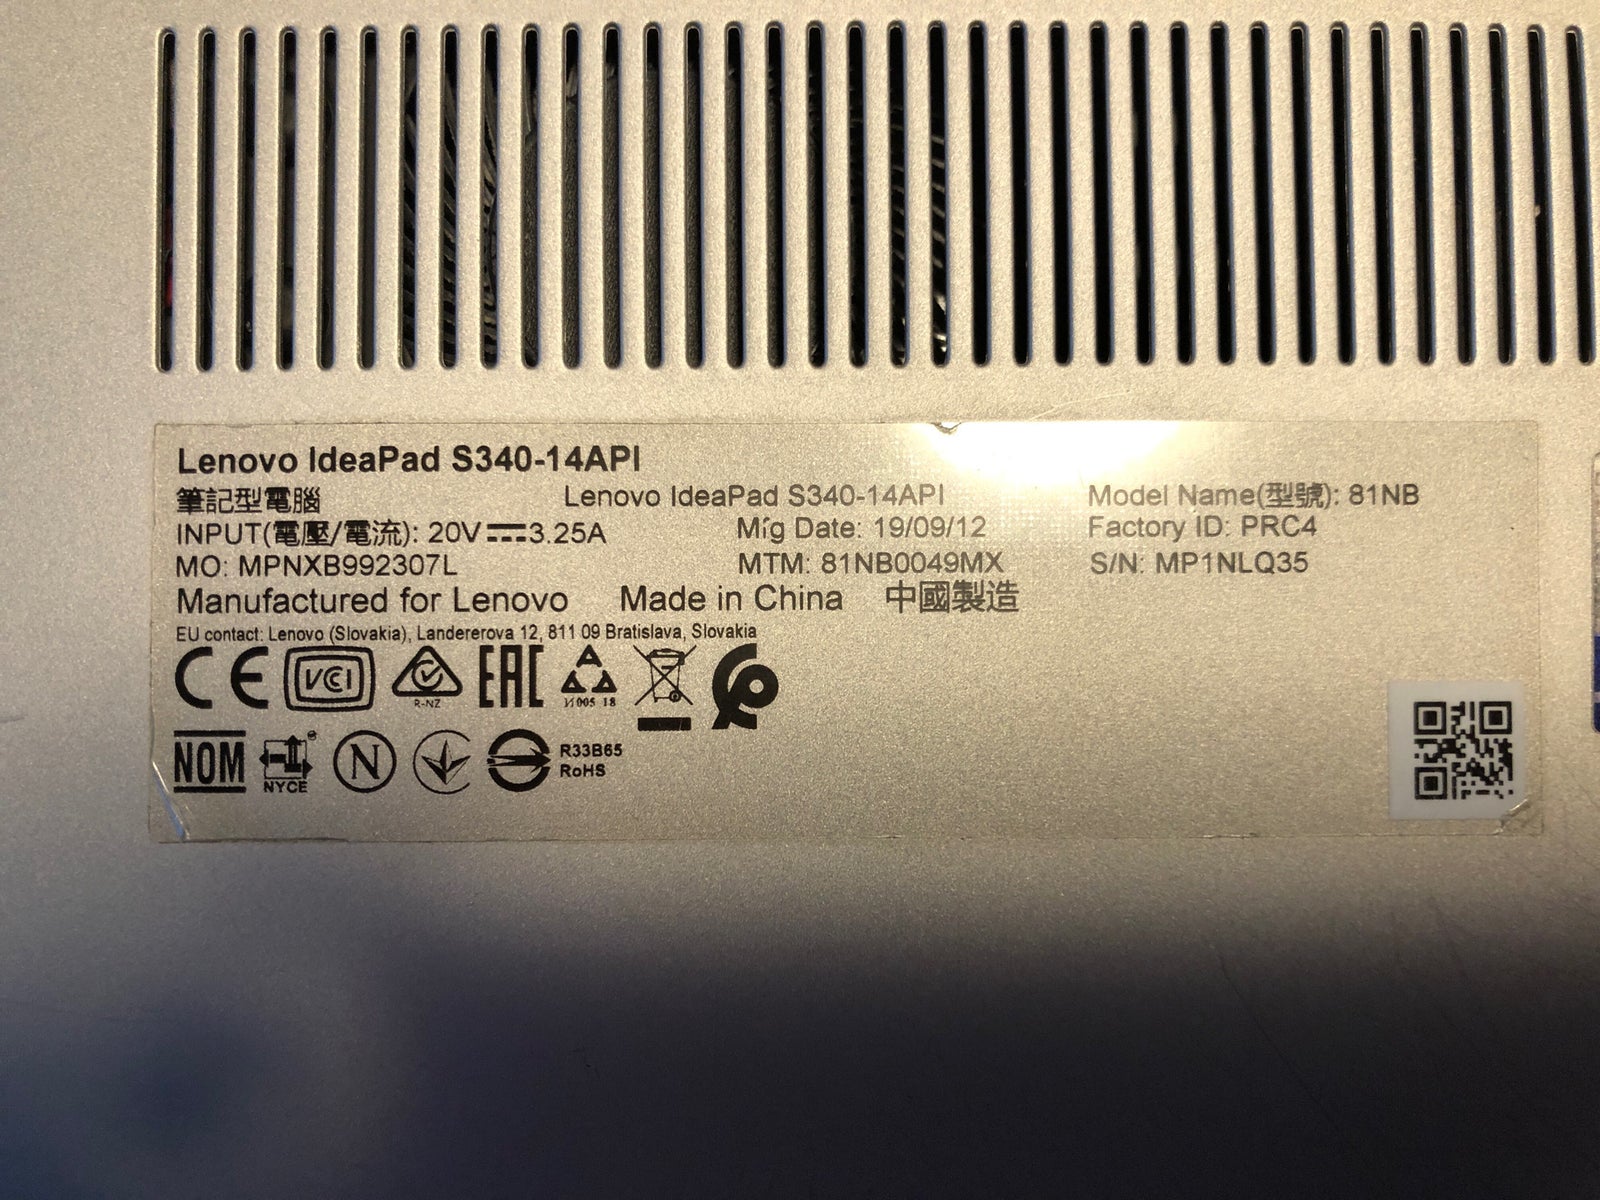 Lenovo Ideapad S340, ryzen 7 3700u GHz, 8 GB GB ram